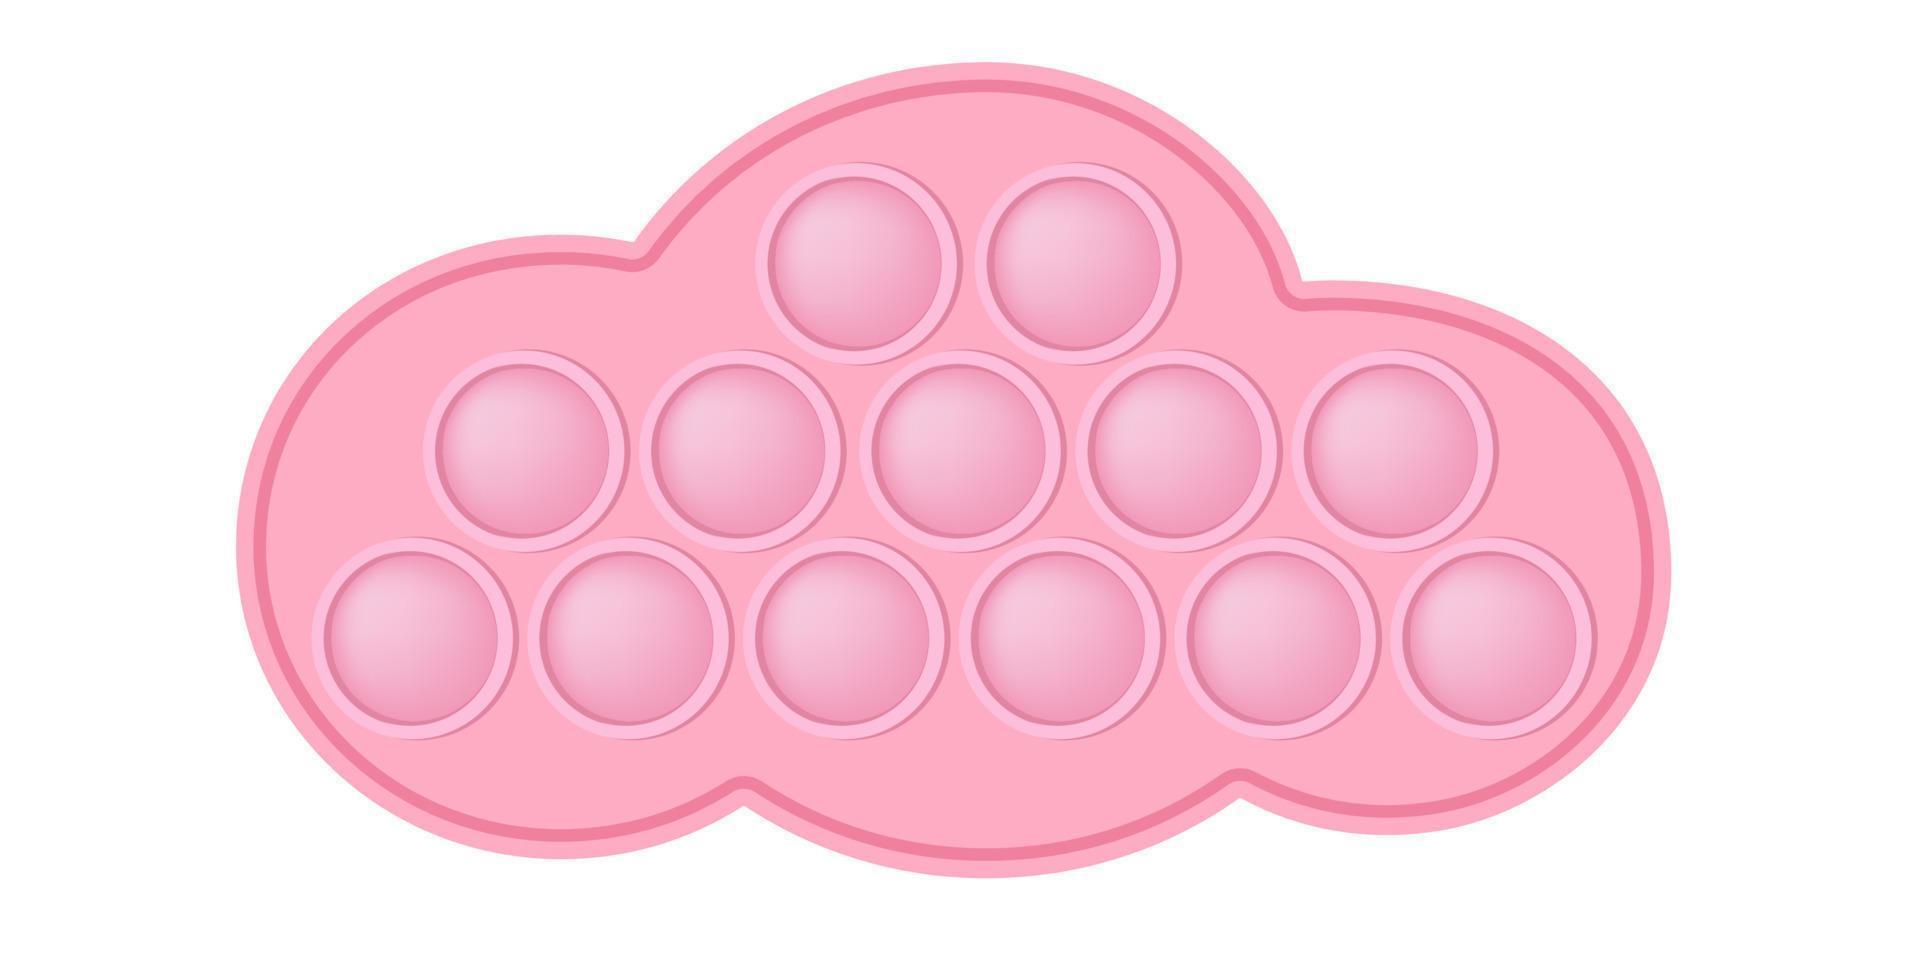 brinquedo popping brinquedo de silicone nuvem rosa para inquietações. brinquedo antiestresse viciante na cor rosa pastel. brinquedo de desenvolvimento sensorial de bolha para dedos de crianças. ilustração vetorial isolada vetor